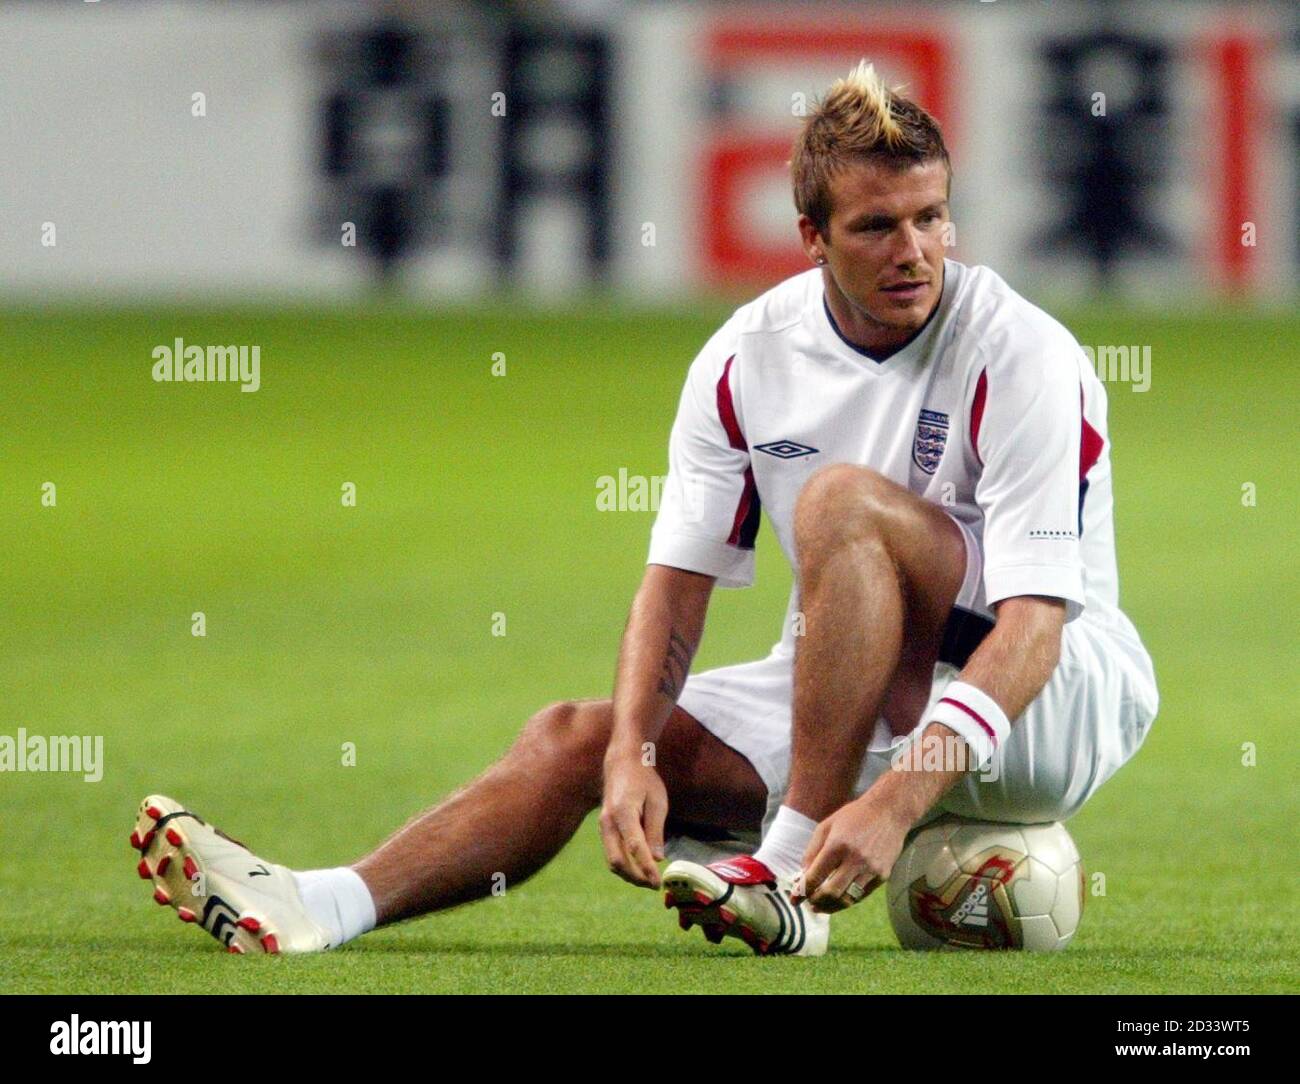 Le capitaine d'Angleterre David Beckham est assis sur un ballon pendant l'entraînement au Sapporo Dome, à Sapporo, au Japon. L'Angleterre joue leur deuxième match de la coupe du monde contre les adversaires du groupe F Argentine. Le premier match contre la Suède s'est terminé par un tirage au sort de 1-1. CETTE IMAGE NE PEUT ÊTRE UTILISÉE QUE DANS LE CONTEXTE D'UNE FONCTION ÉDITORIALE. AUCUNE UTILISATION DE SITE WEB/INTERNET À MOINS QUE LE SITE NE SOIT ENREGISTRÉ AUPRÈS DE L'ASSOCIATION DE FOOTBALL PREMIER LEAGUE Banque D'Images